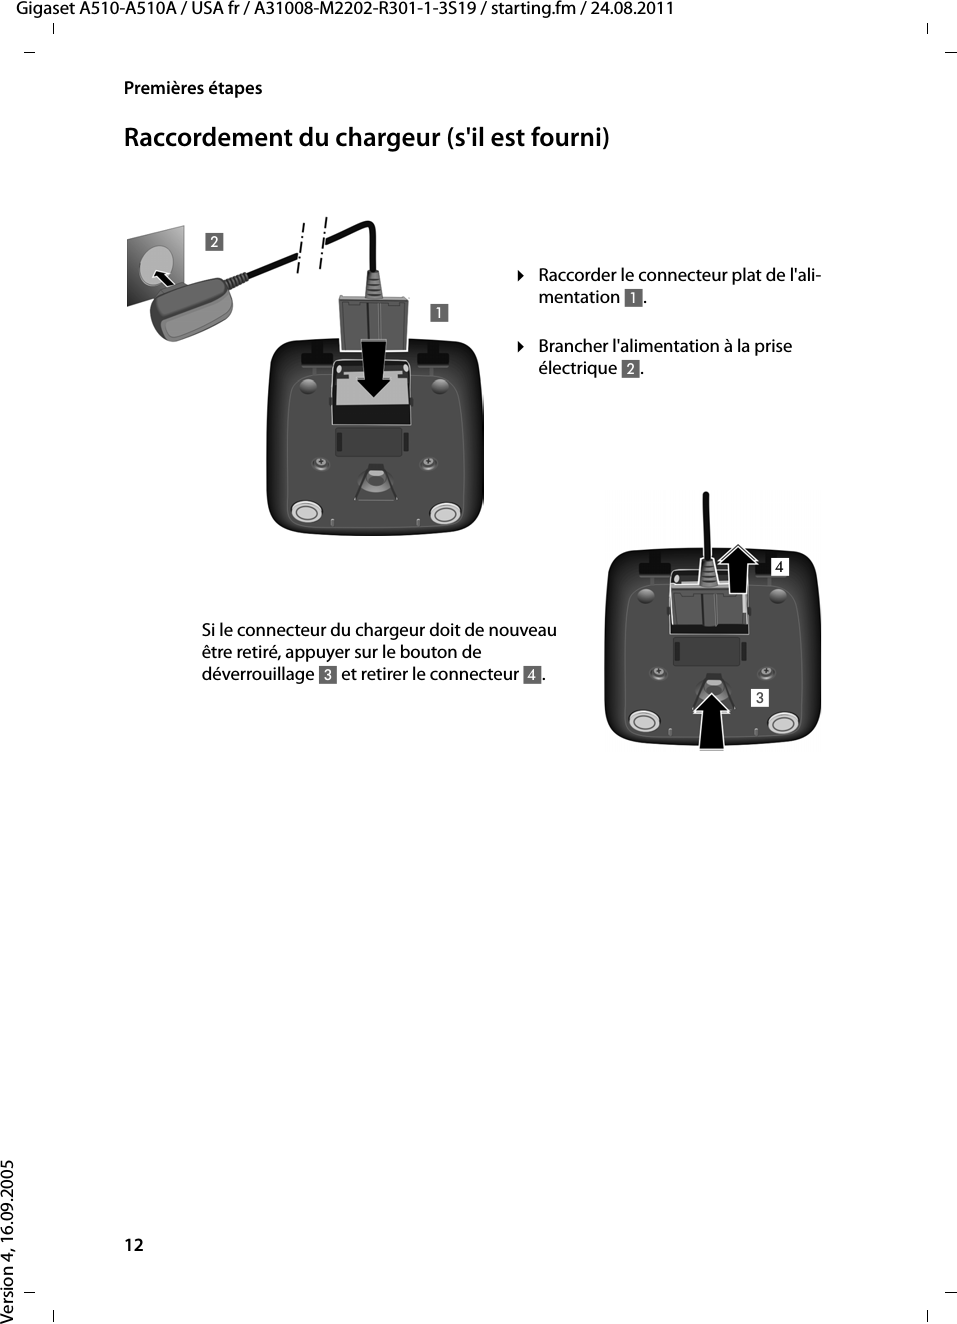 12Premières étapesGigaset A510-A510A / USA fr / A31008-M2202-R301-1-3S19 / starting.fm / 24.08.2011Version 4, 16.09.2005Raccordement du chargeur (s&apos;il est fourni)¤Brancher l&apos;alimentation à la prise électrique 2.¤Raccorder le connecteur plat de l&apos;ali-mentation 1.Si le connecteur du chargeur doit de nouveau être retiré, appuyer sur le bouton de déverrouillage 3 et retirer le connecteur 4. 1234